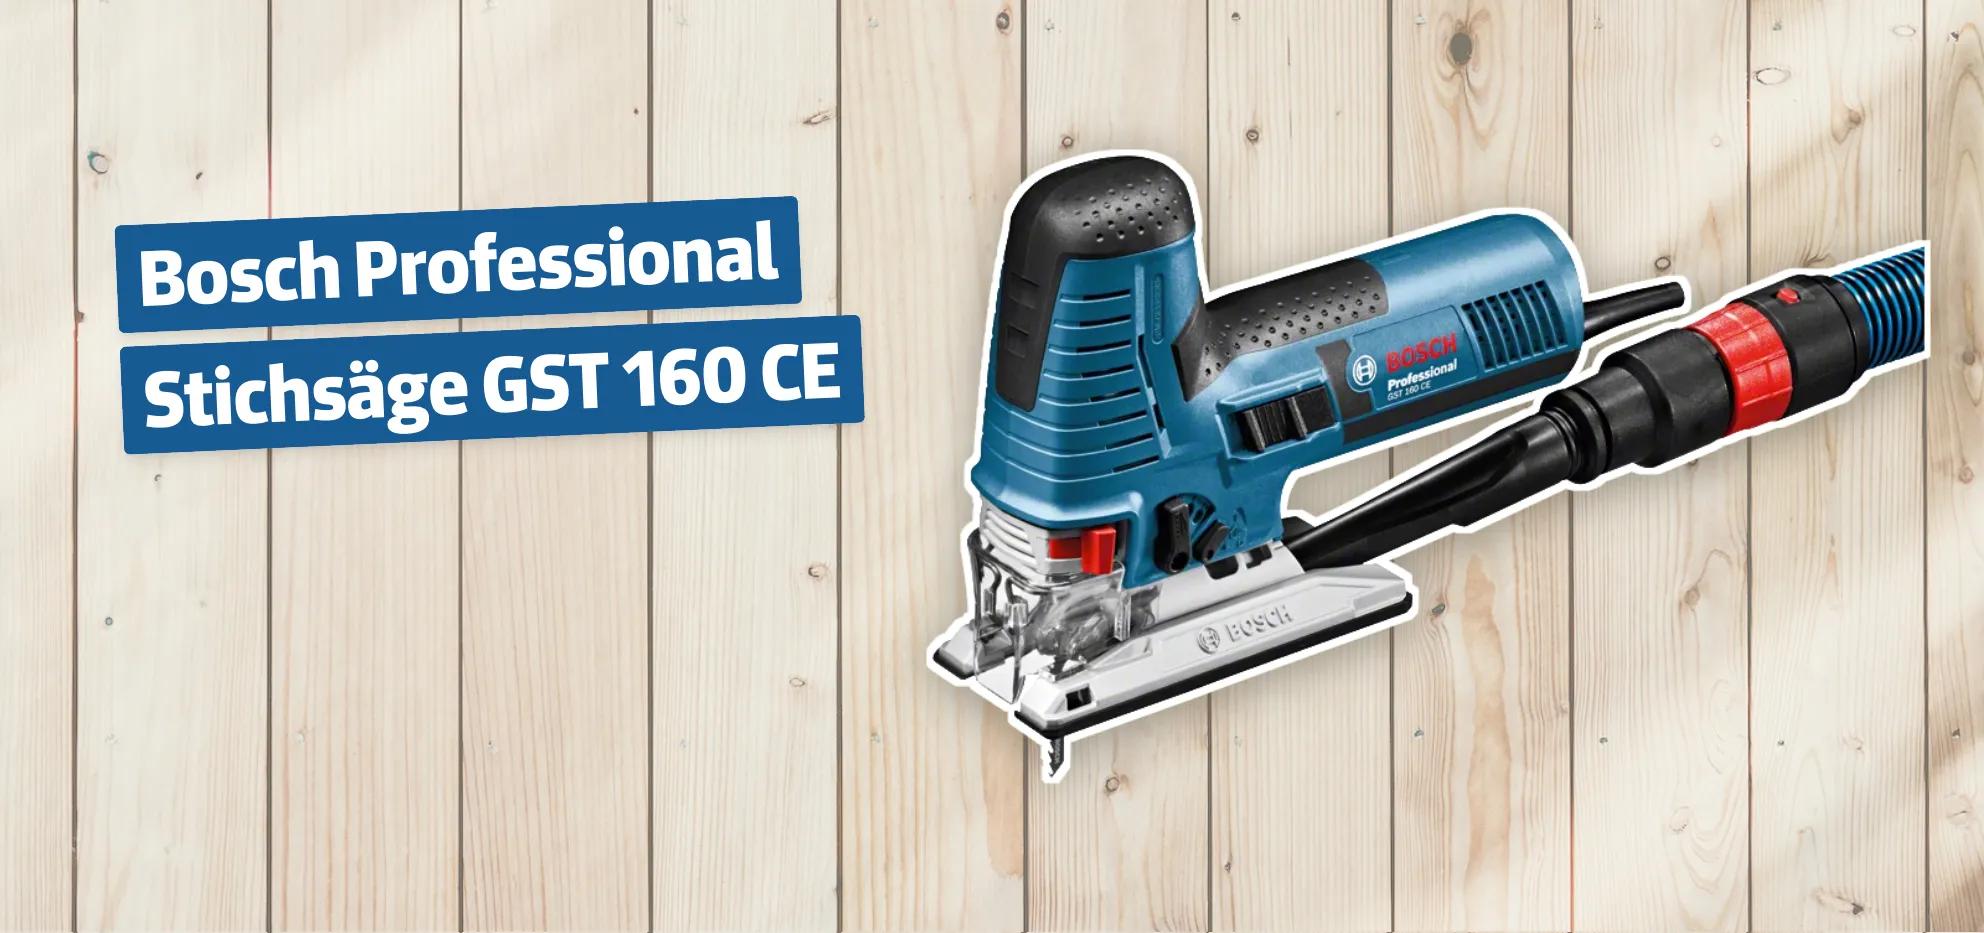 Bosch Professional Stichsäge GST 160 CE